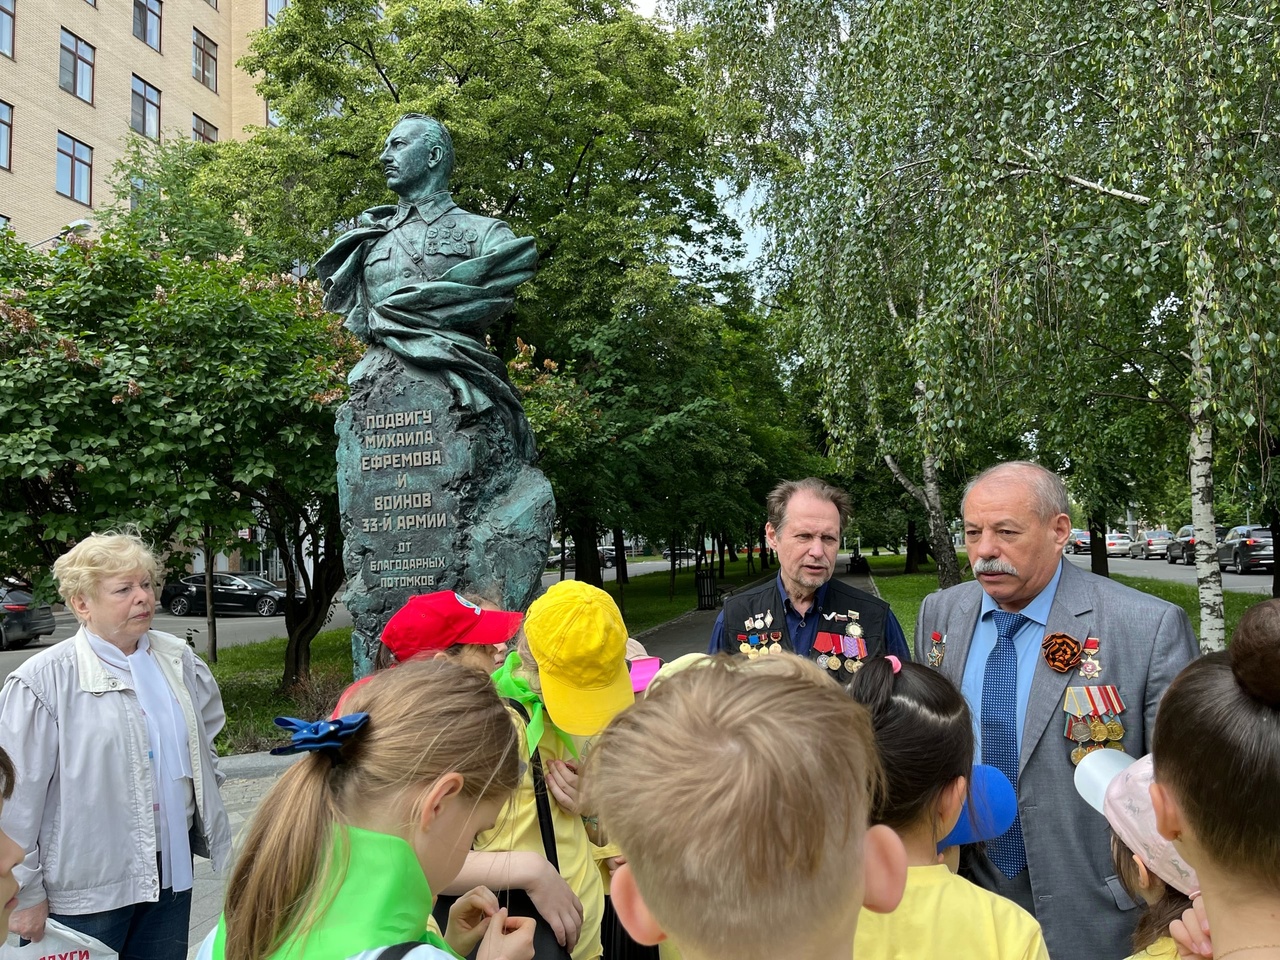 Детской отряд «Арт-каникулы» из клуба «Форпост» провел линейку у памятника легендарному командарму Михаилу Ефремову.